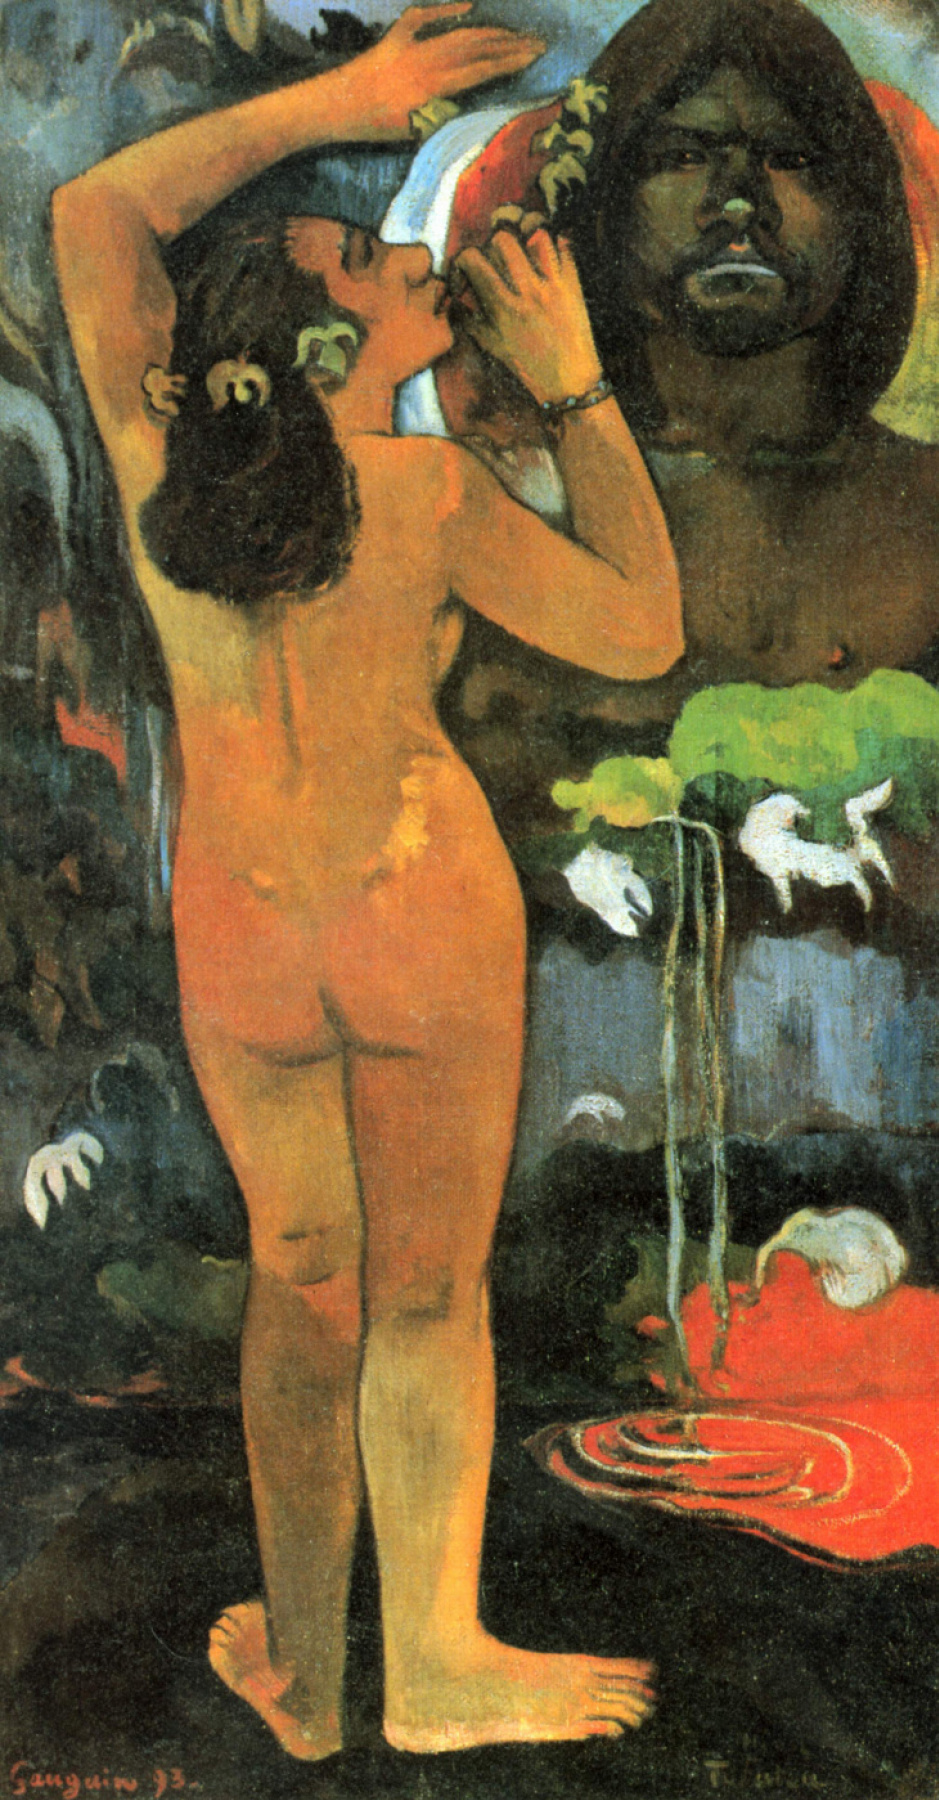 Paul Gauguin. Hina, moon goddess and Te Fatu, the earth spirit